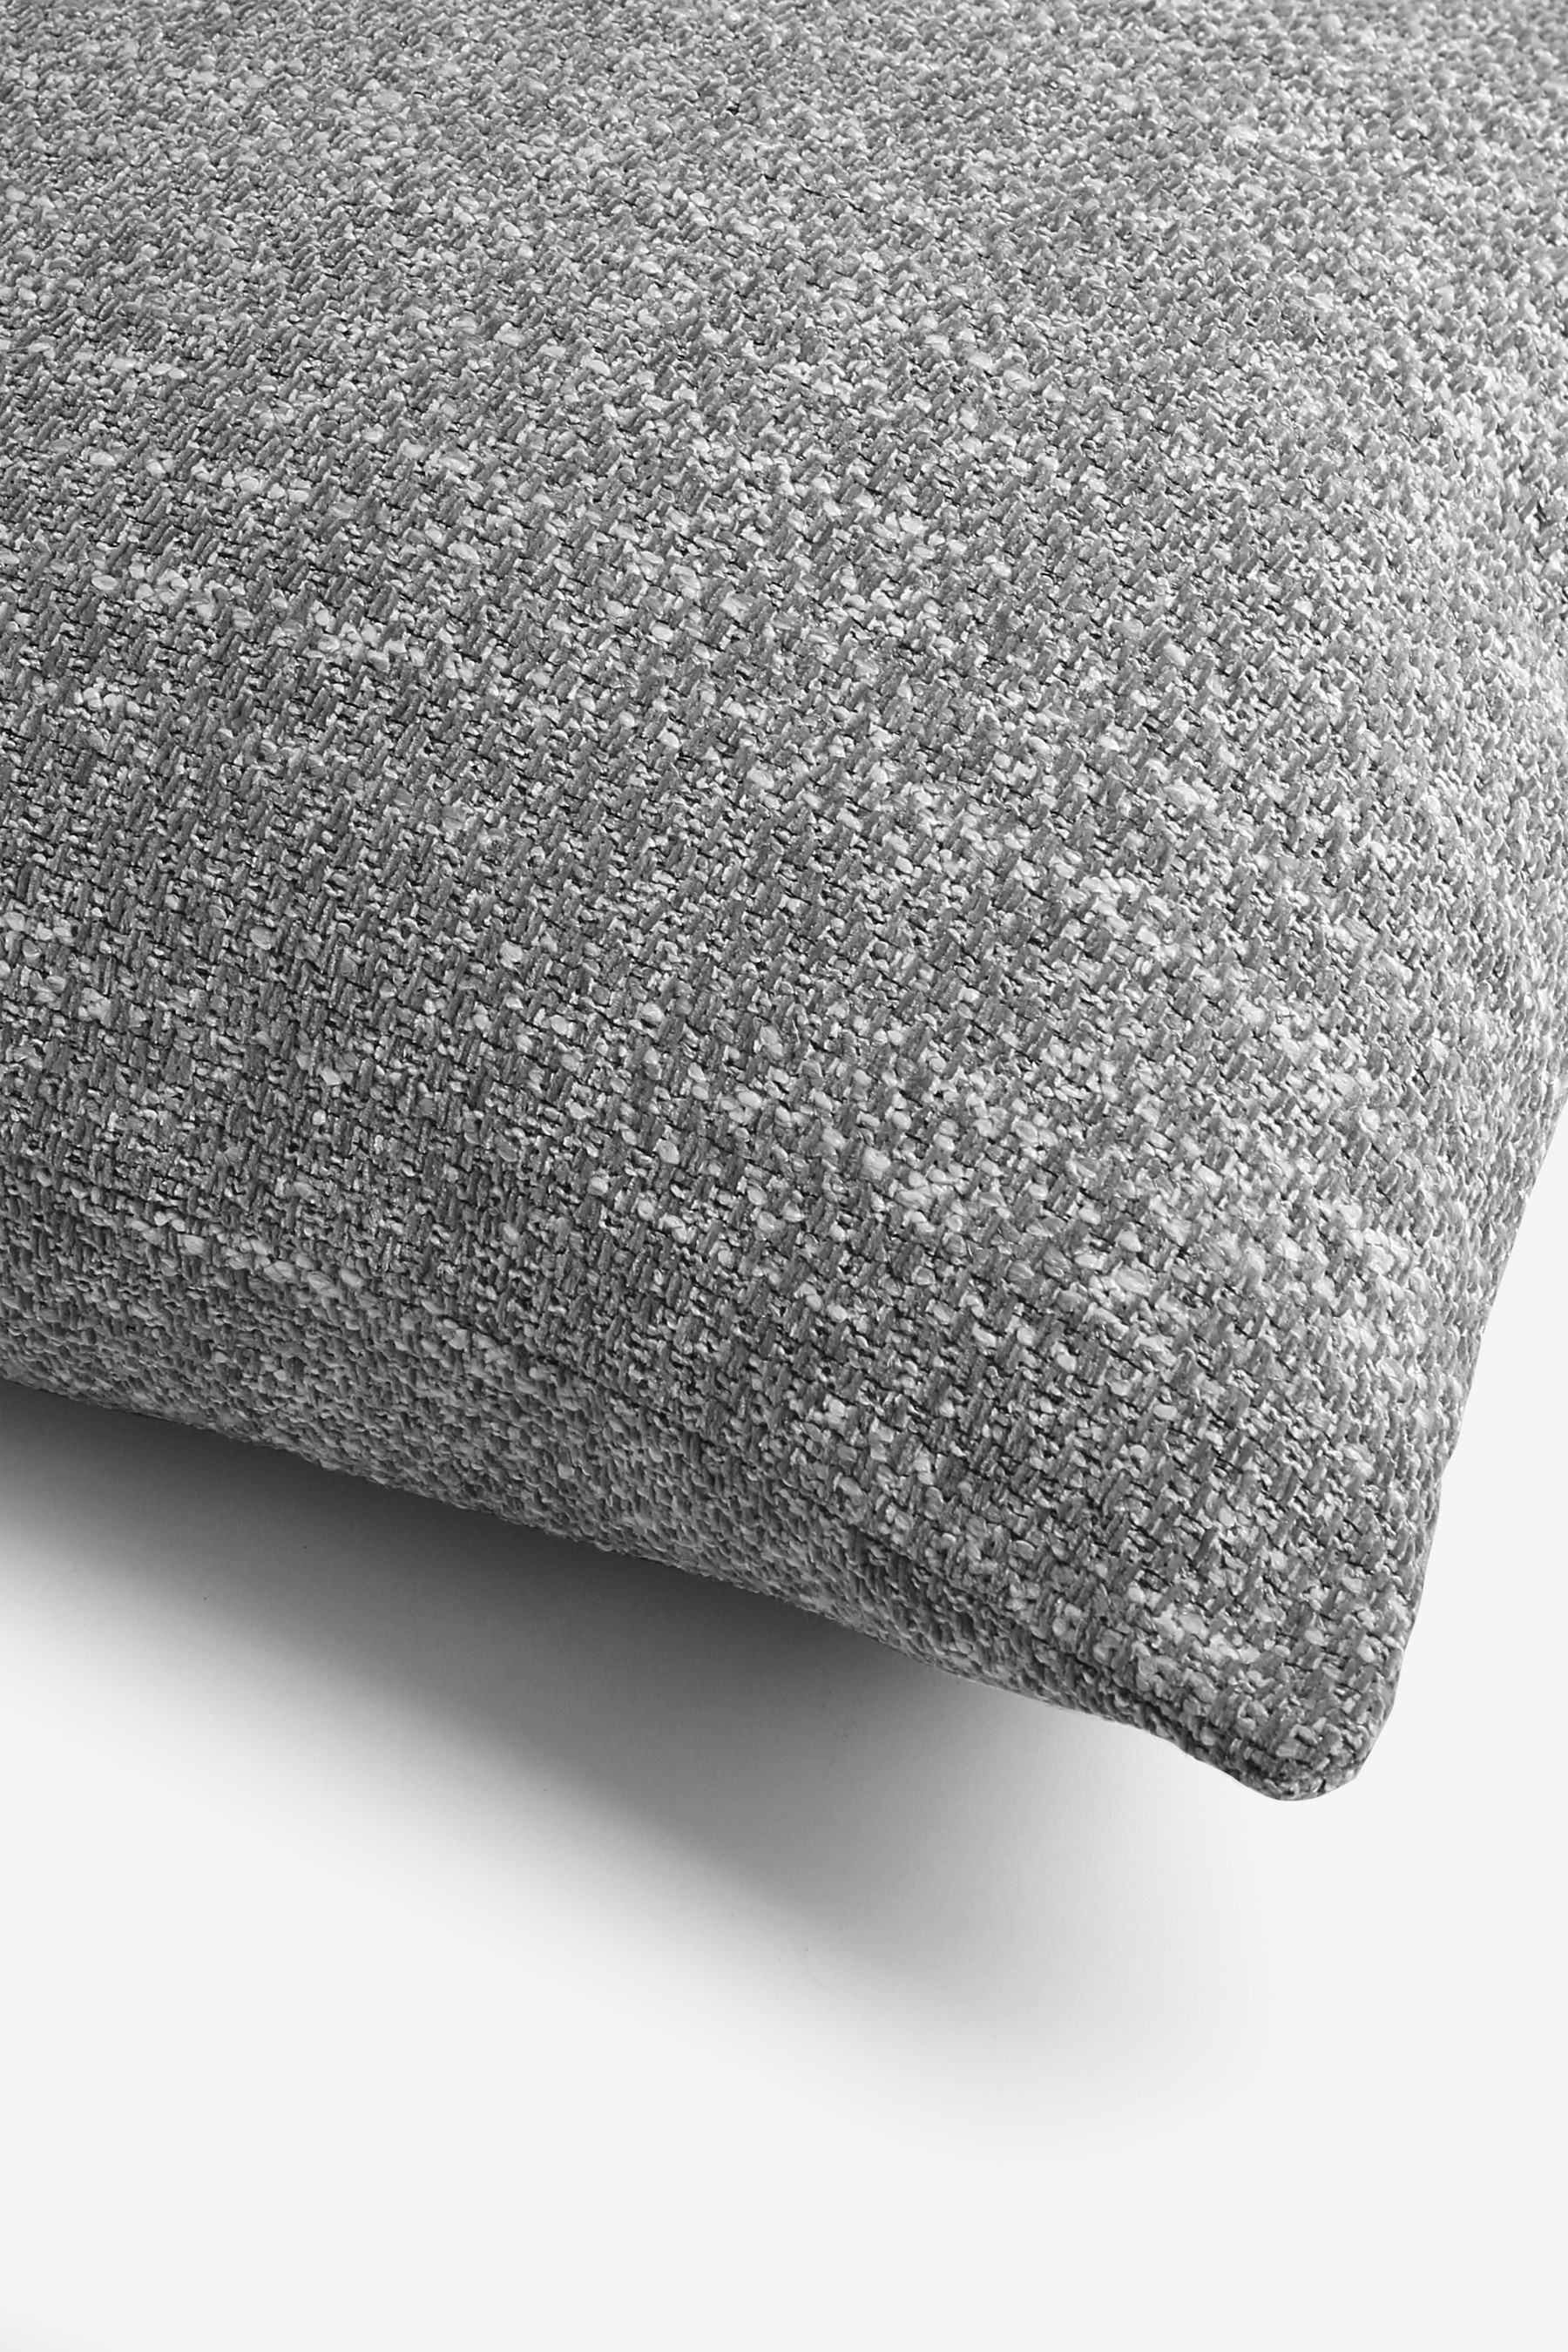 Ashton Chunky Chenille Texture Cushion Large Square